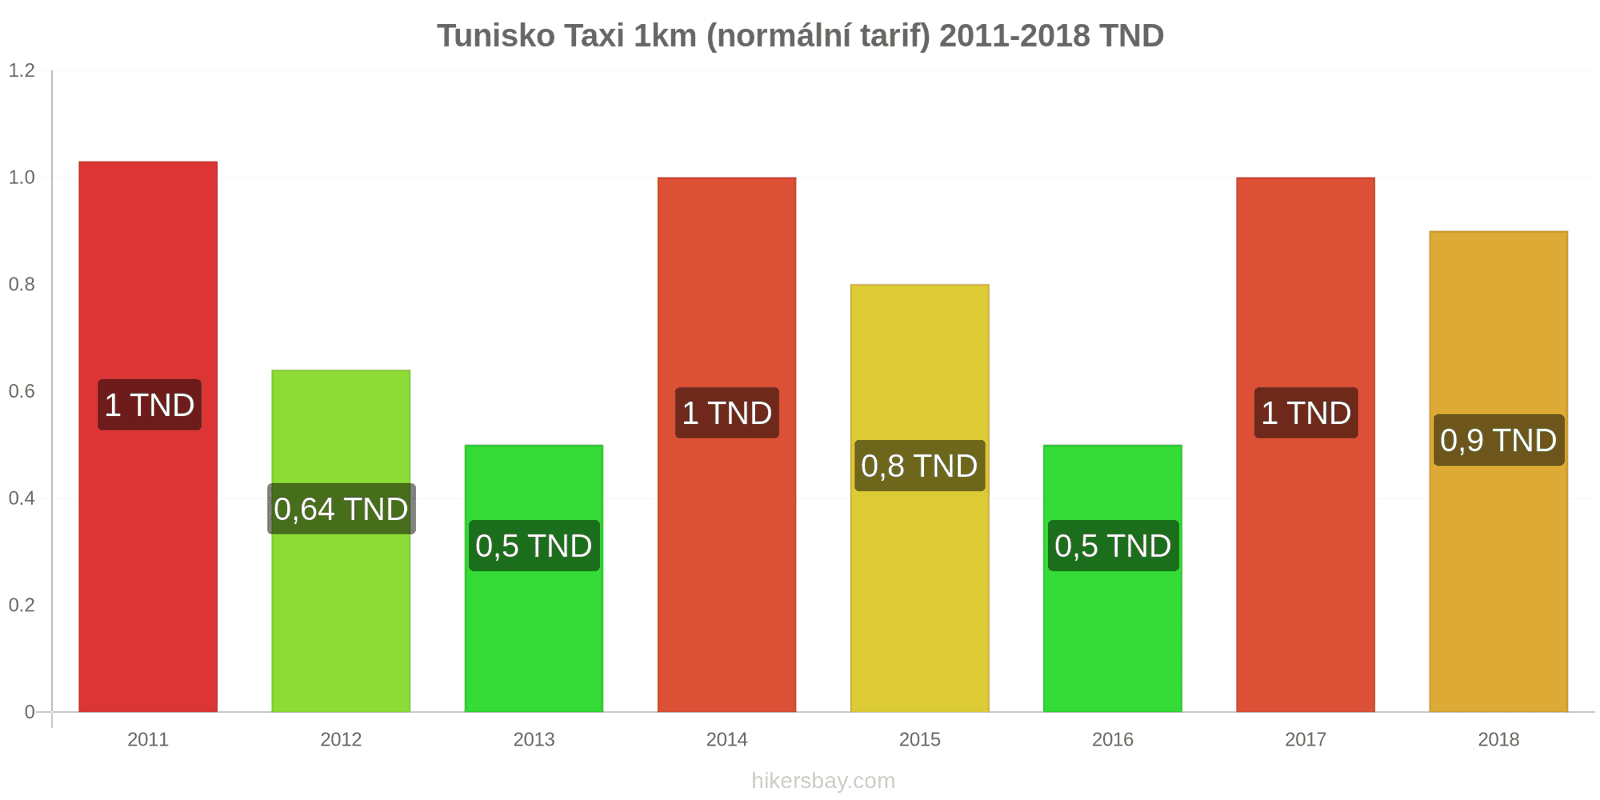 Tunisko změny cen Taxi 1km (normální tarif) hikersbay.com